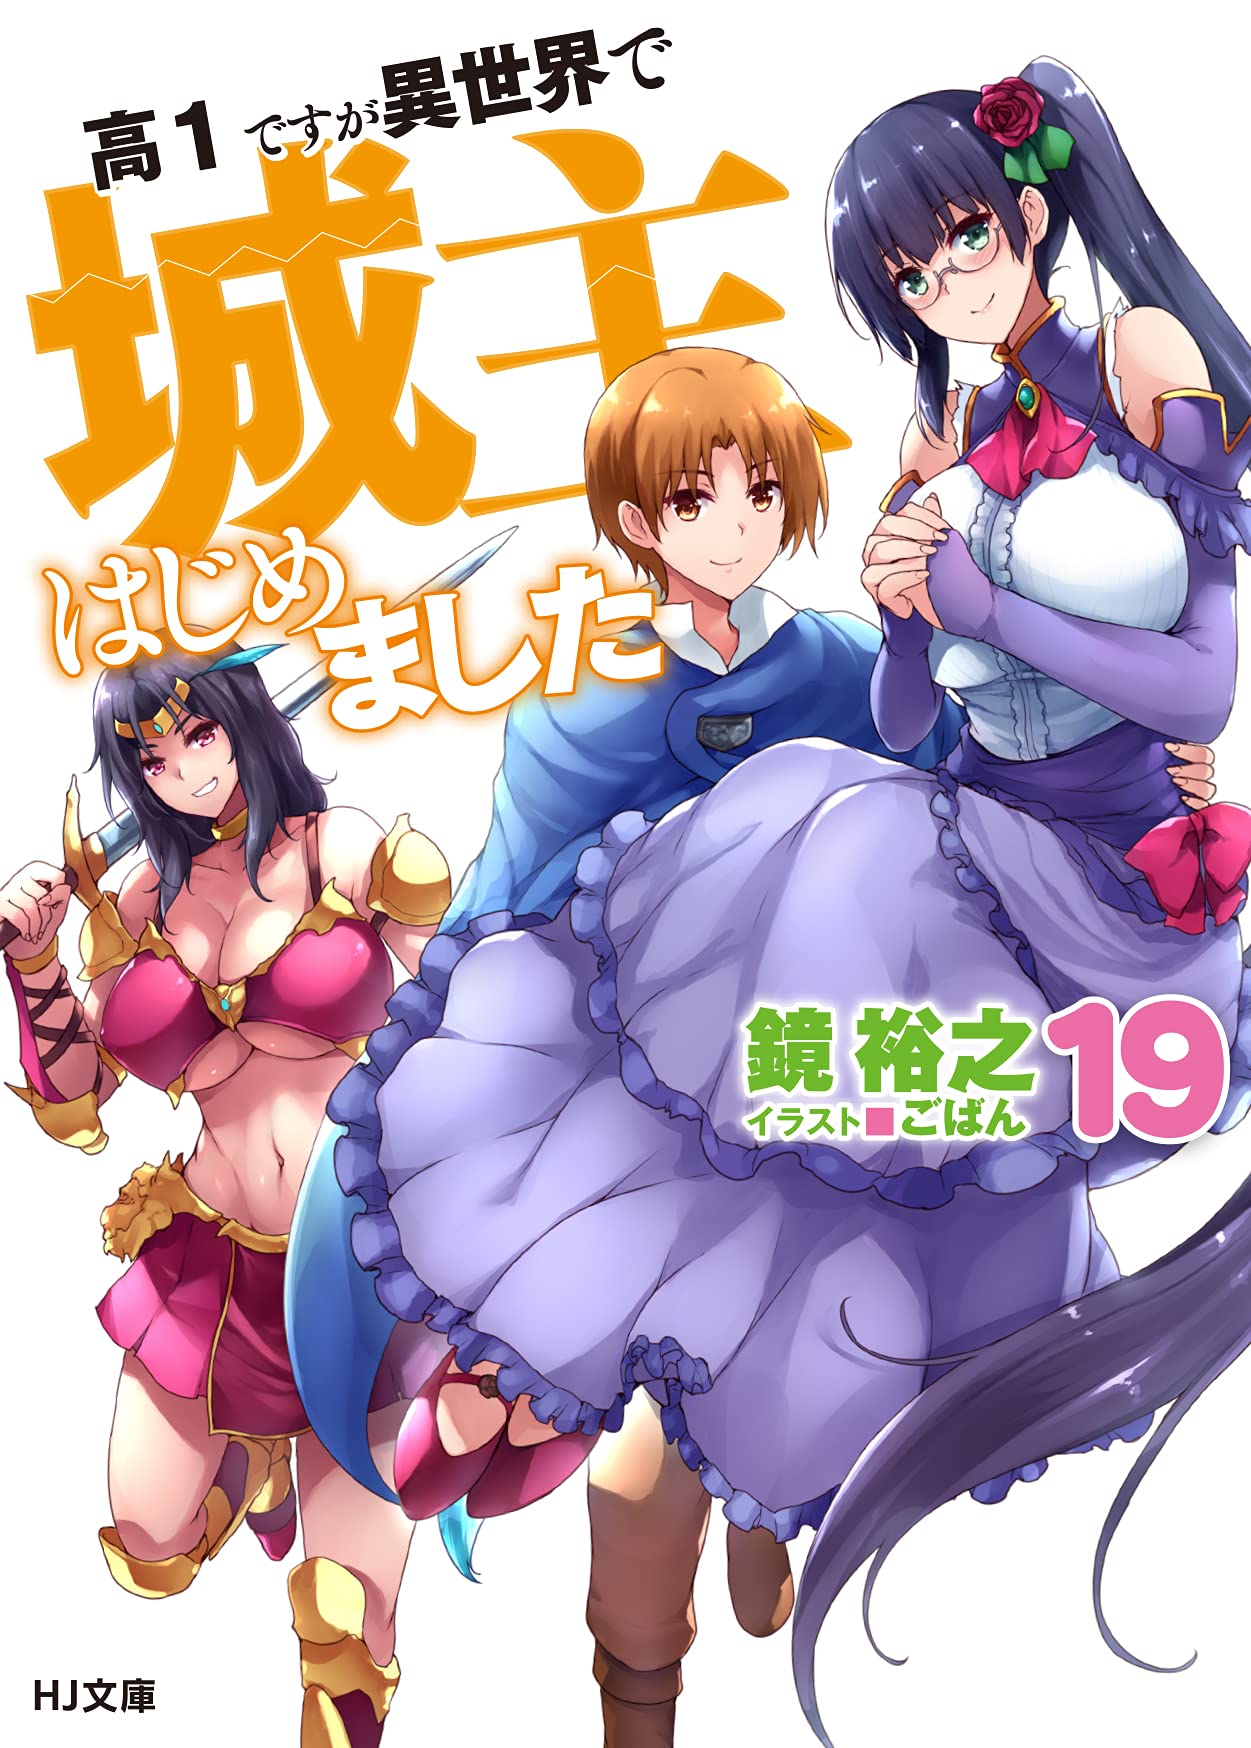 Read Mikakunin De Shinkoukei Vol.1 Chapter 1 on Mangakakalot